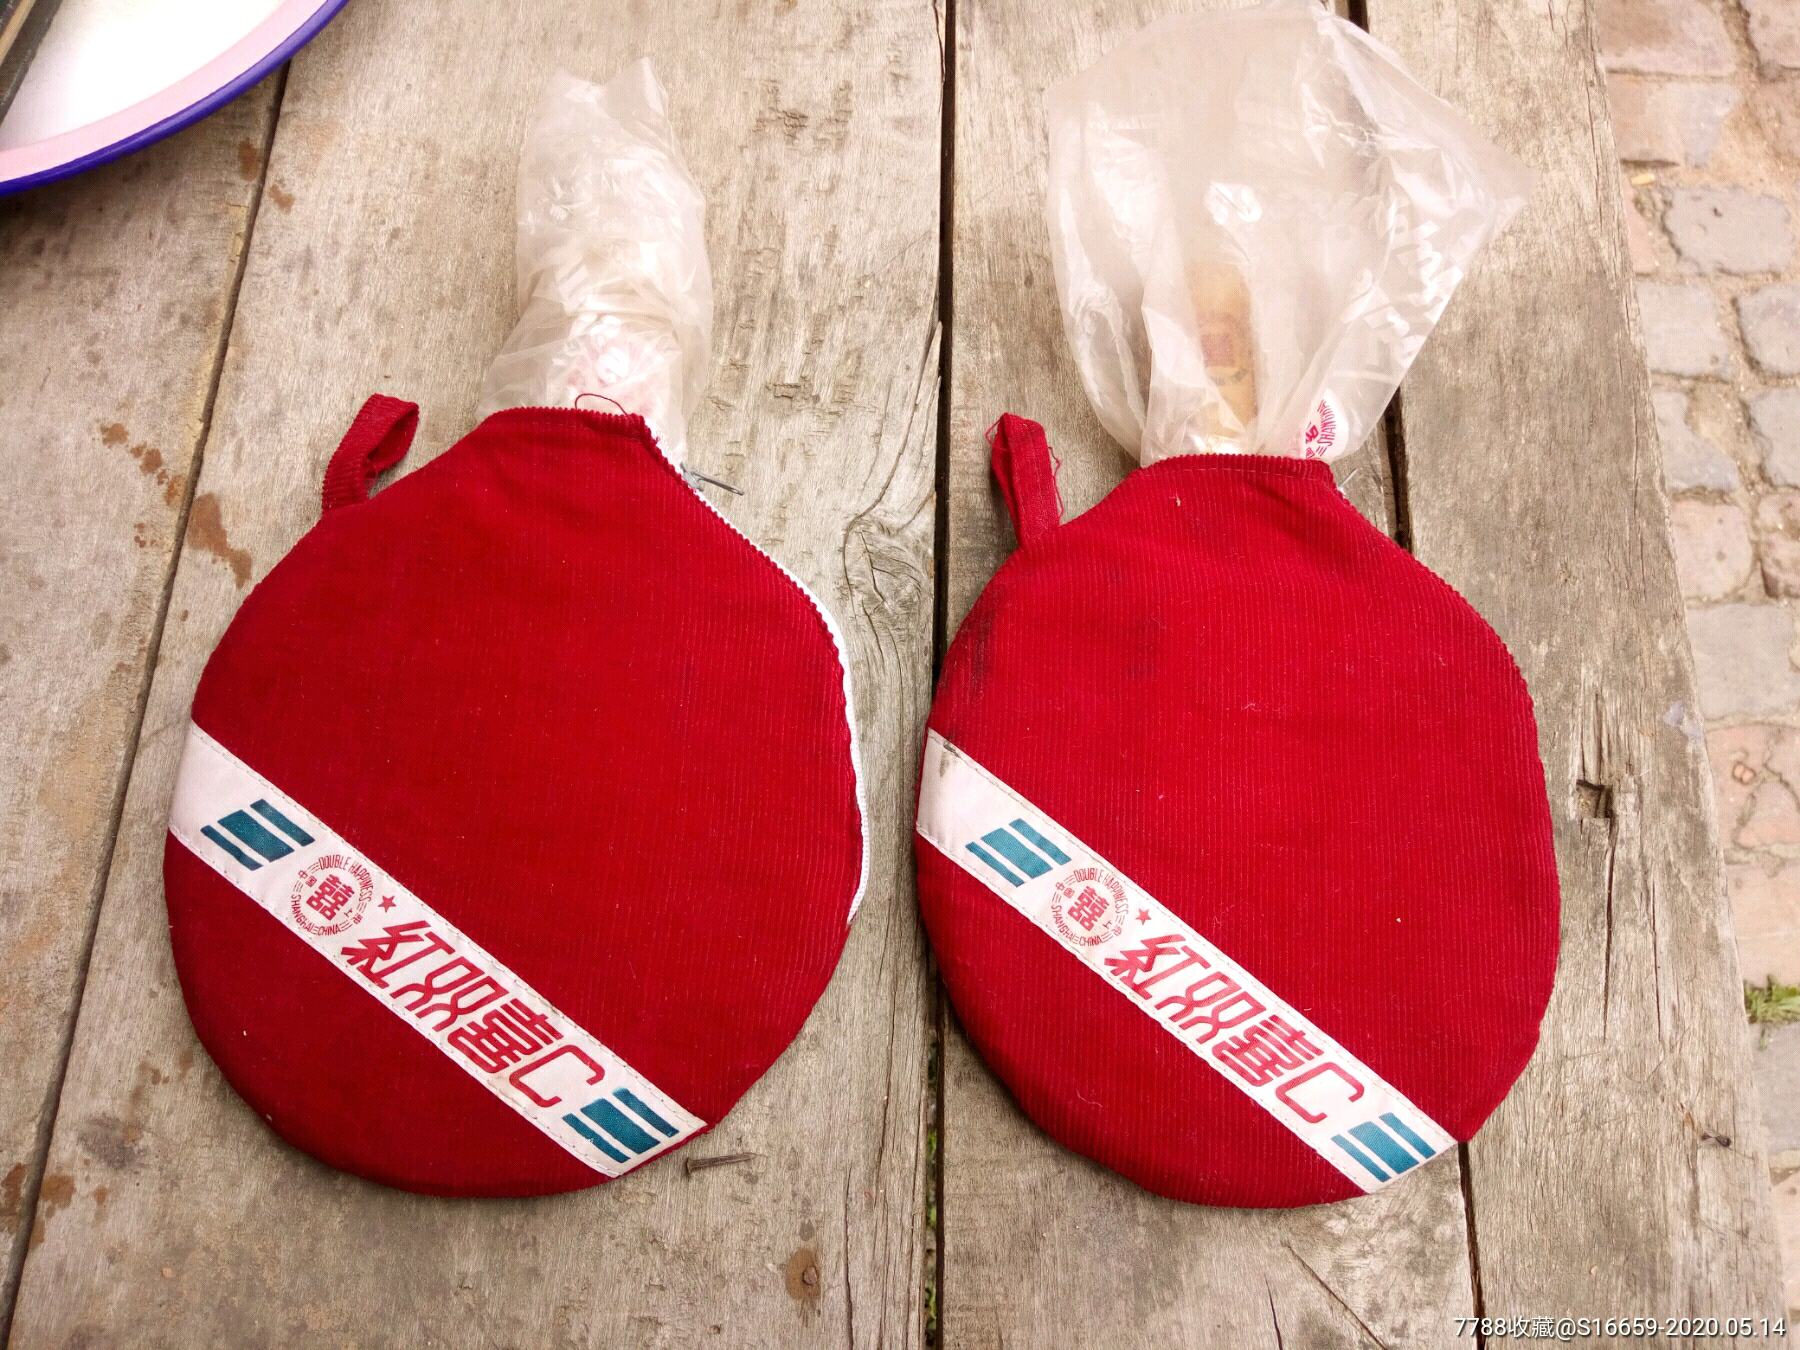 八十年代上海红双喜乒乓球拍一对原装布绒袋几乎全新出口型pf4_价格